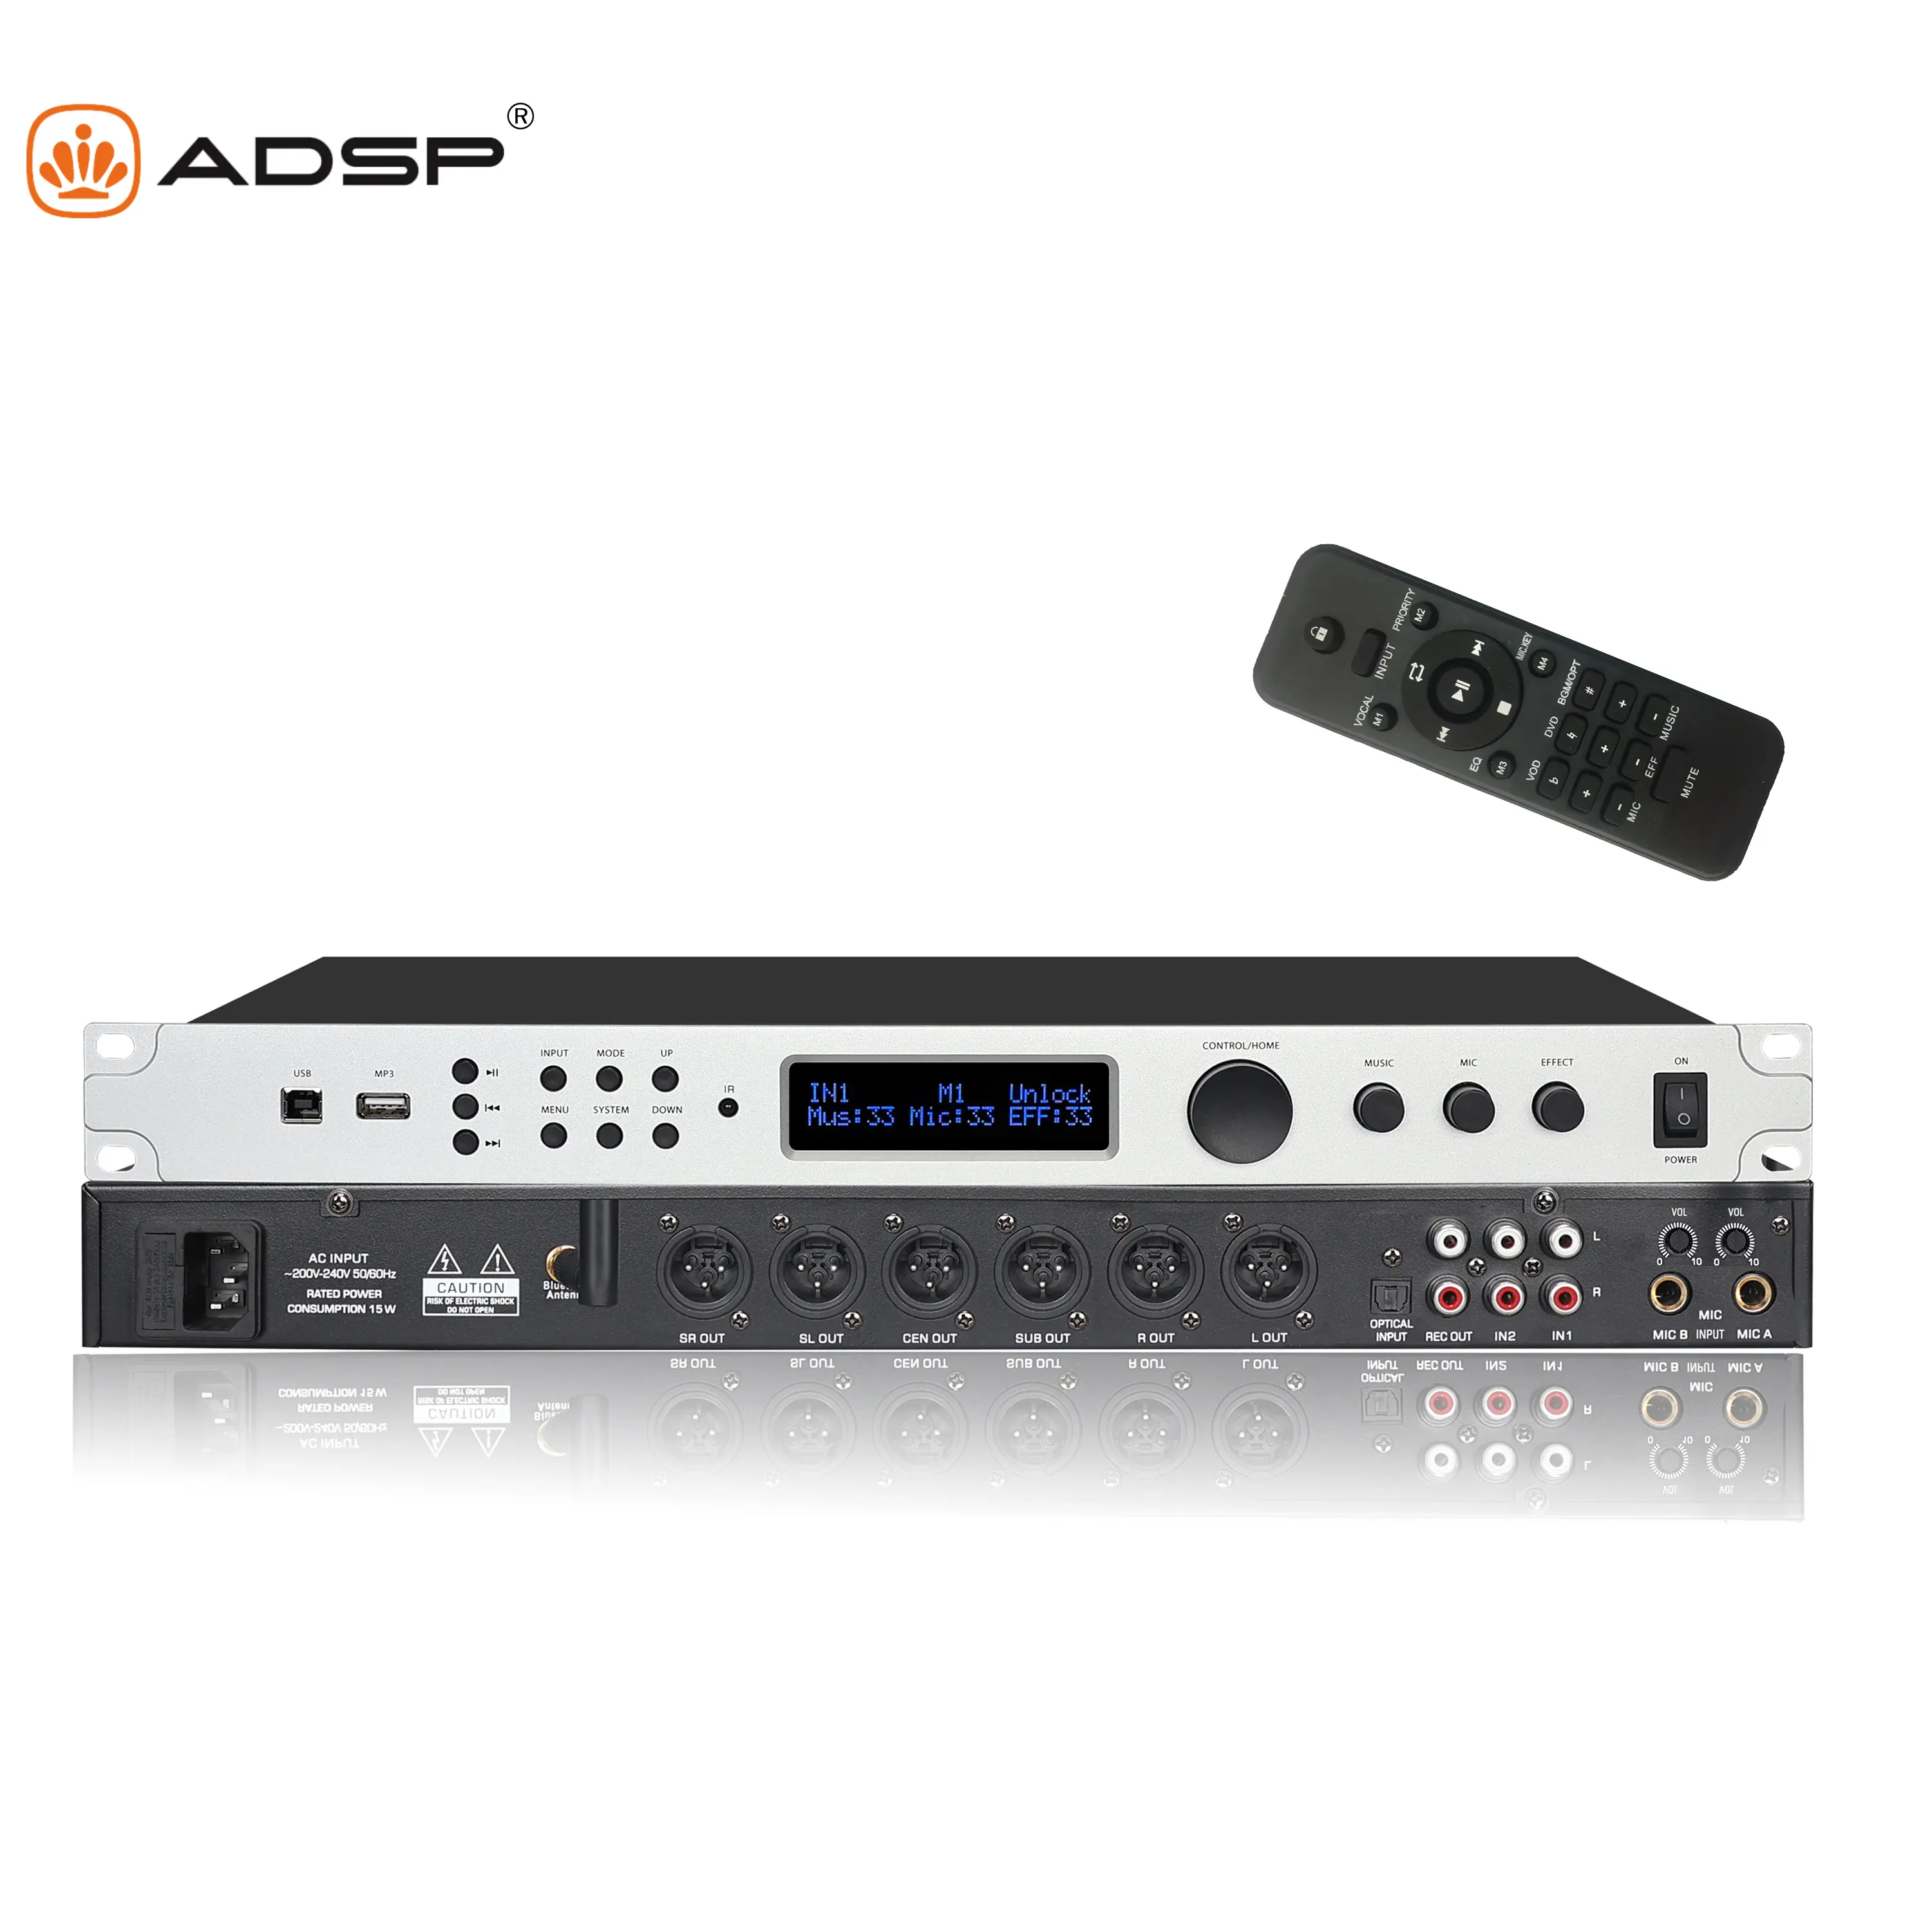 Adsp v5 हॉट सेलिंग प्रोफेशनल स्टेज फ्रंट लेवल डिजिटल प्रभावी कराओके माइक्रोफोन ऑडियो प्रोसेसर